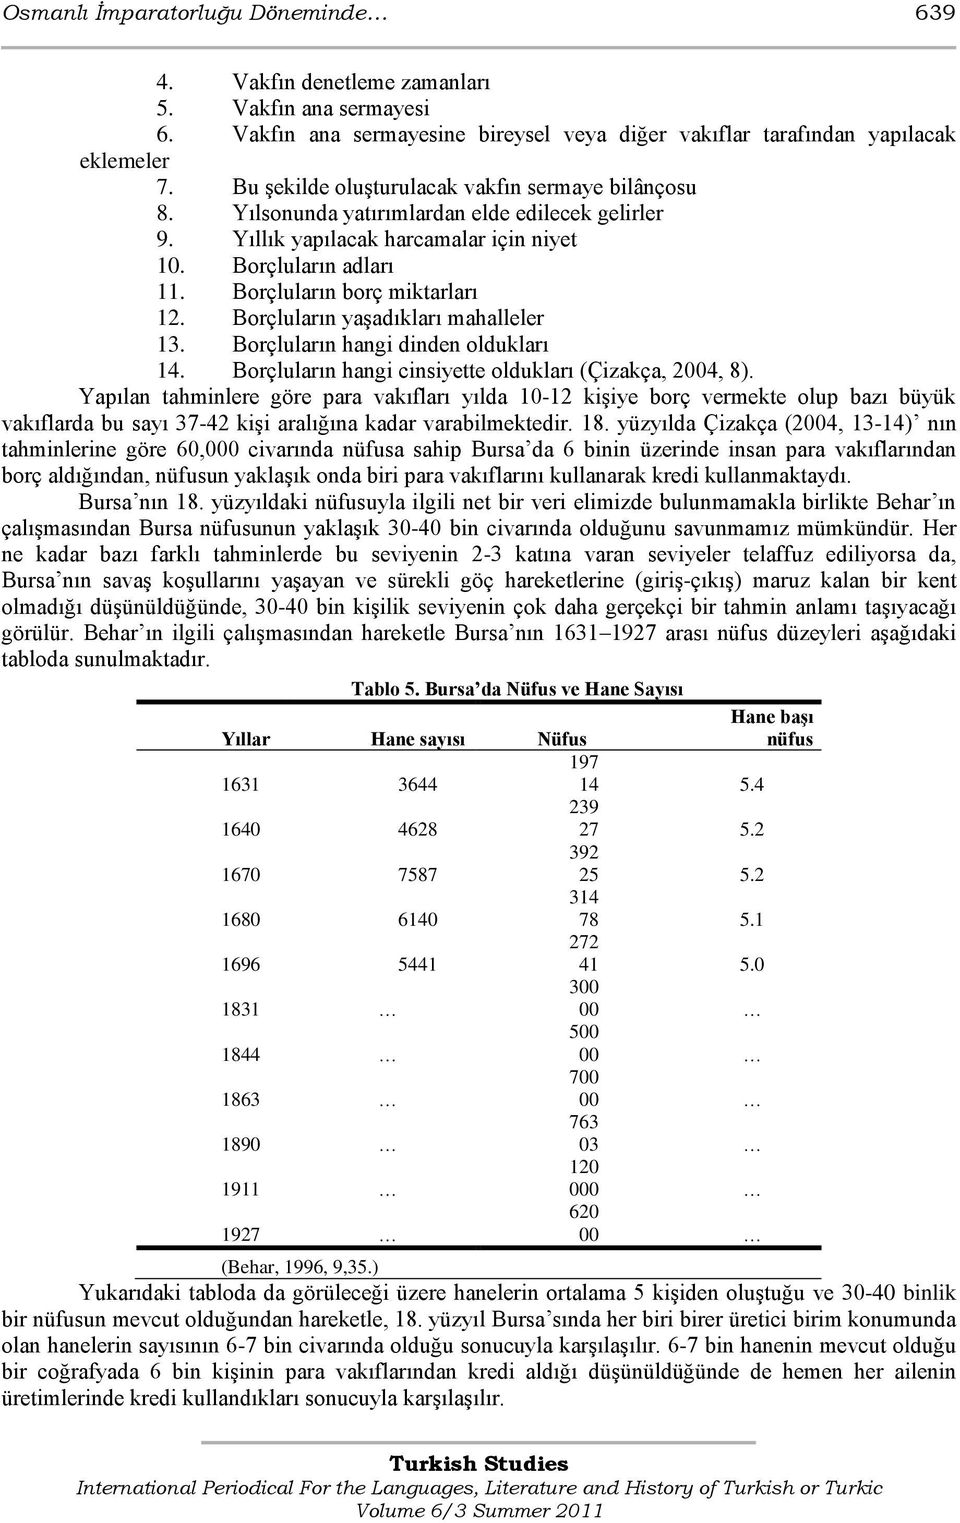 Borçluların borç miktarları 12. Borçluların yaģadıkları mahalleler 13. Borçluların hangi dinden oldukları 14. Borçluların hangi cinsiyette oldukları (Çizakça, 2004, 8).